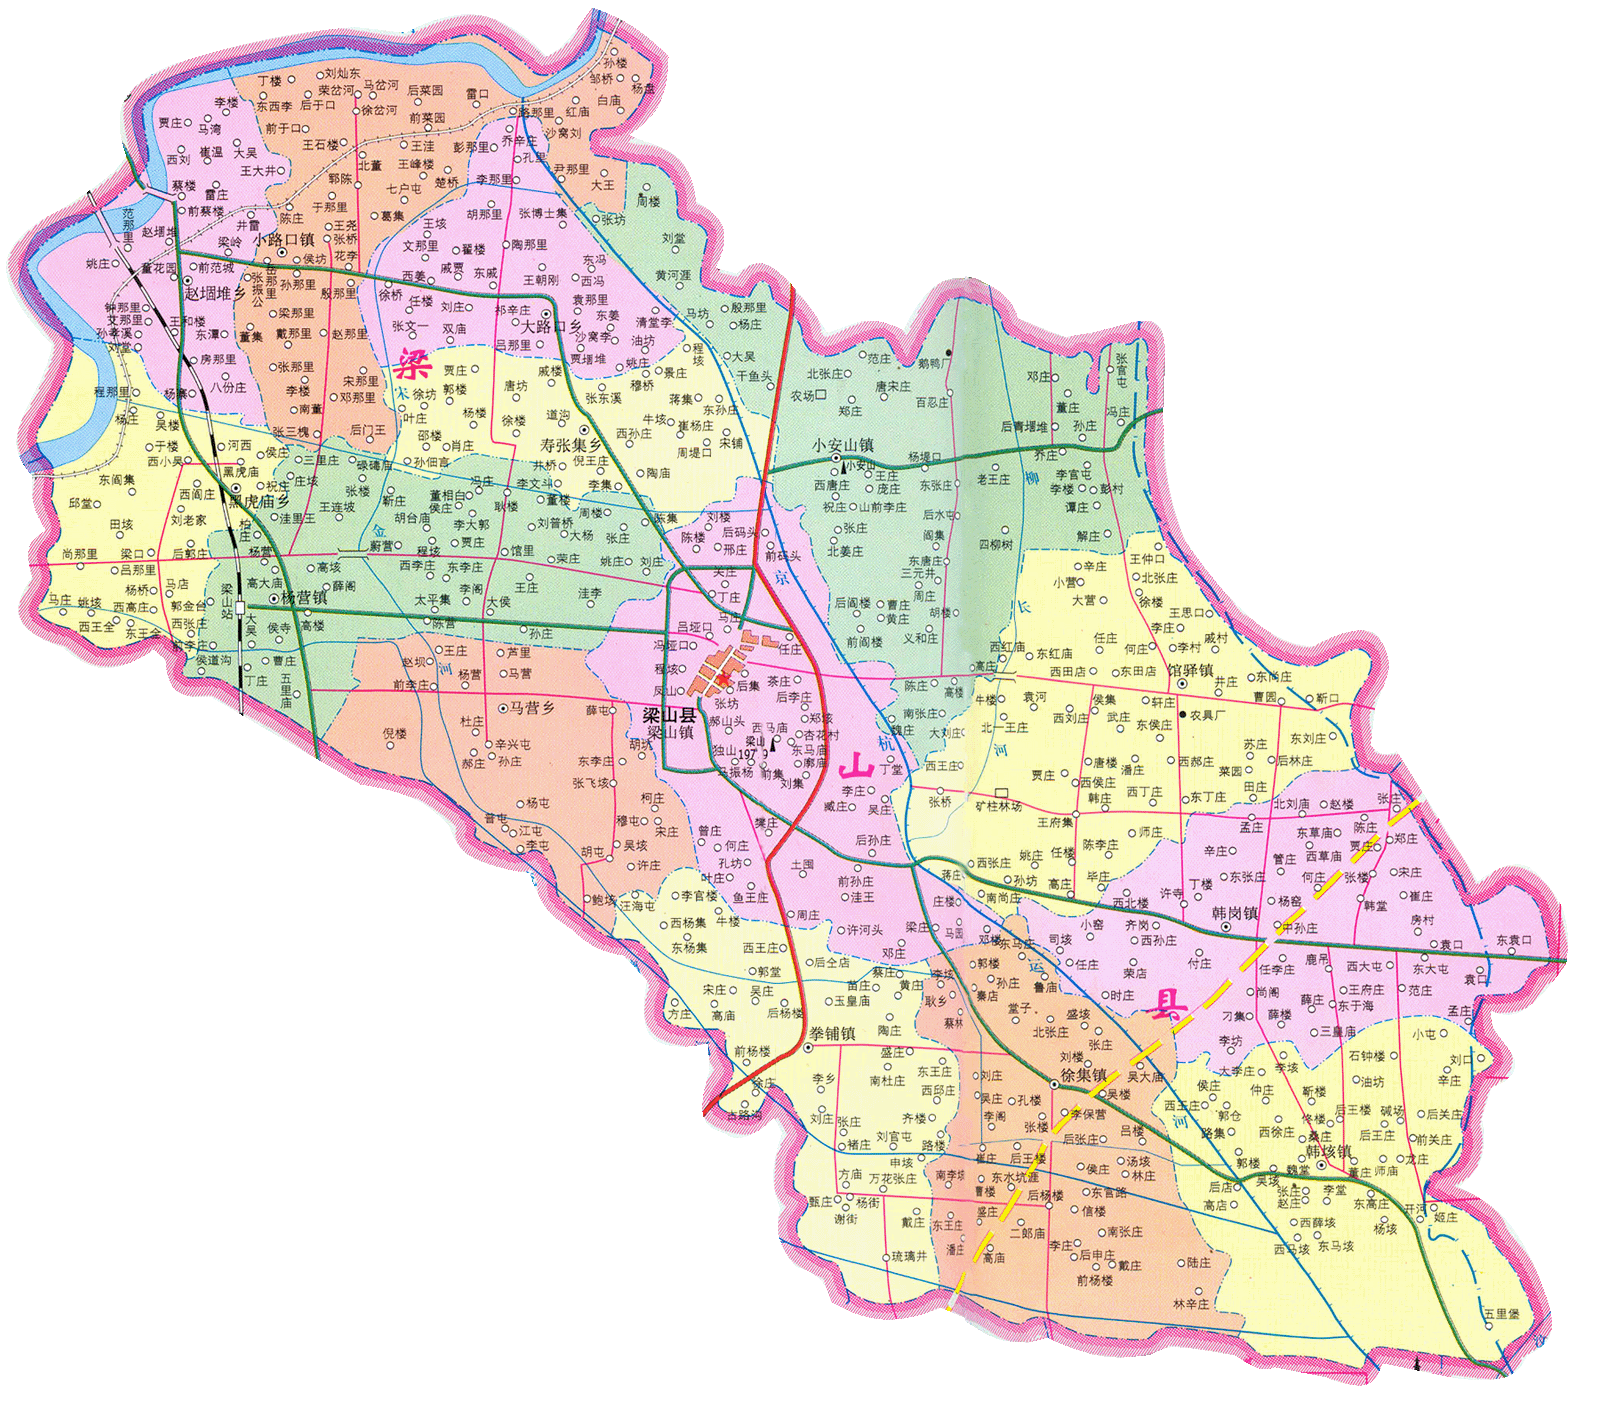 山东地区历史卫星地图数据 - 山东梁山县2009和2010年历史卫星图